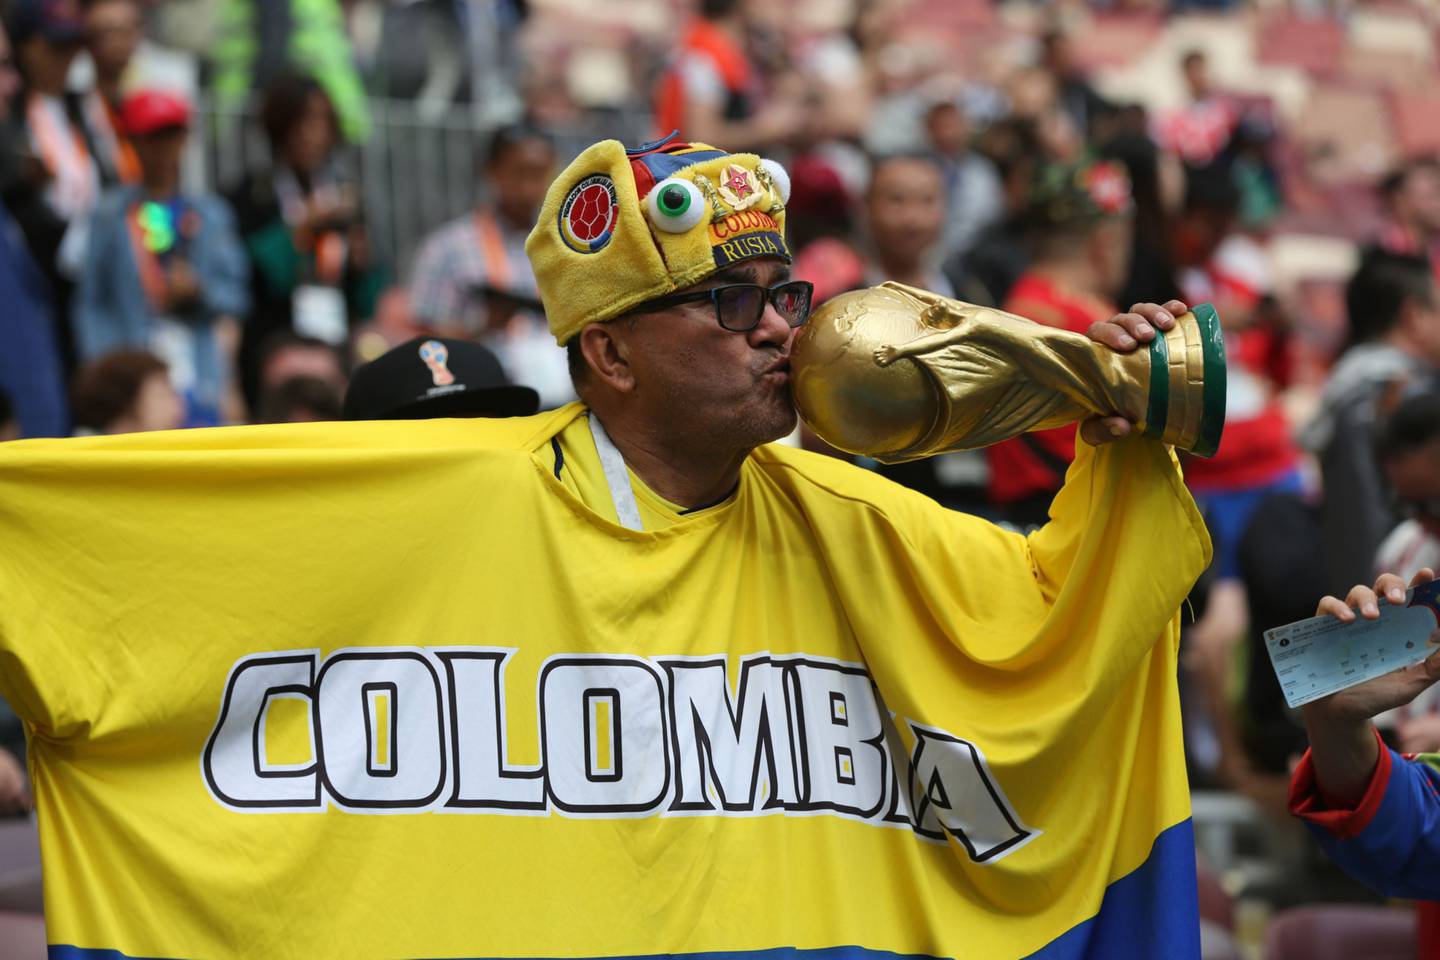 Un fanático del fútbol de Colombia besa una réplica del trofeo de la Copa Mundial durante la ceremonia de apertura de la Copa Mundial de la FIFA en el estadio Luzhniki en Moscú, Rusia, el jueves 14 de junio de 2018.